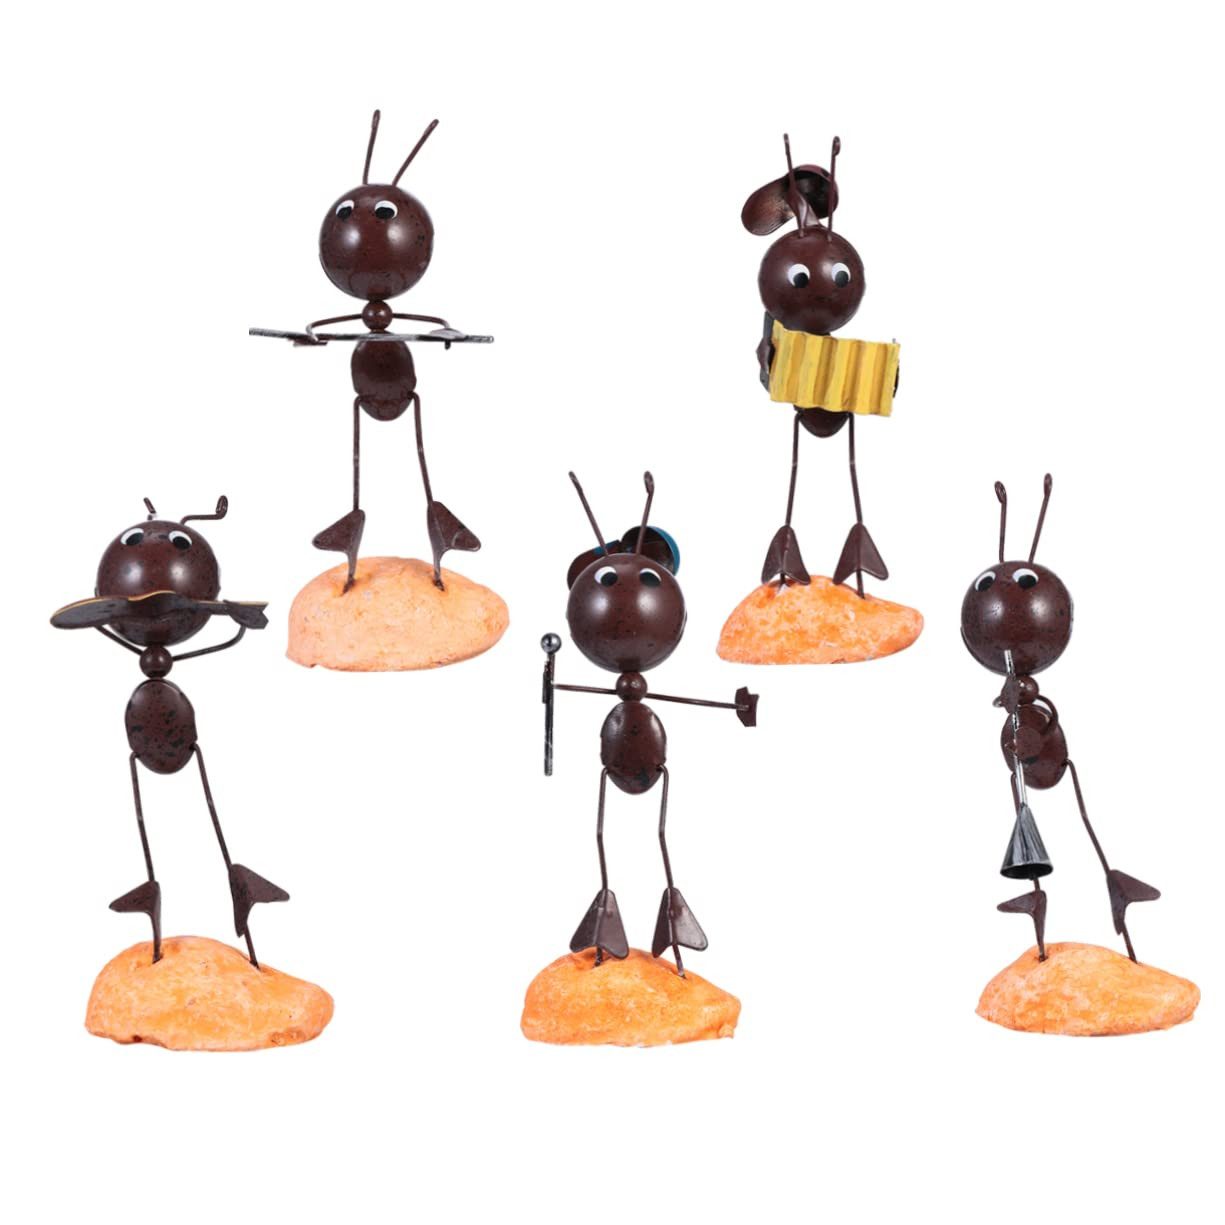 Liebesleben Skulptur 5er-Pack Ameisenband-Ornamente, Musiker-Desktop-Dekoration (Bringen Sie Spaß in Ihr Zimmer., Exquisite Ameisenform, schön und kreativ), Zimmer, Schlafzimmer, Eingangsbereich, Büro, Retro-Deko-Ornamente